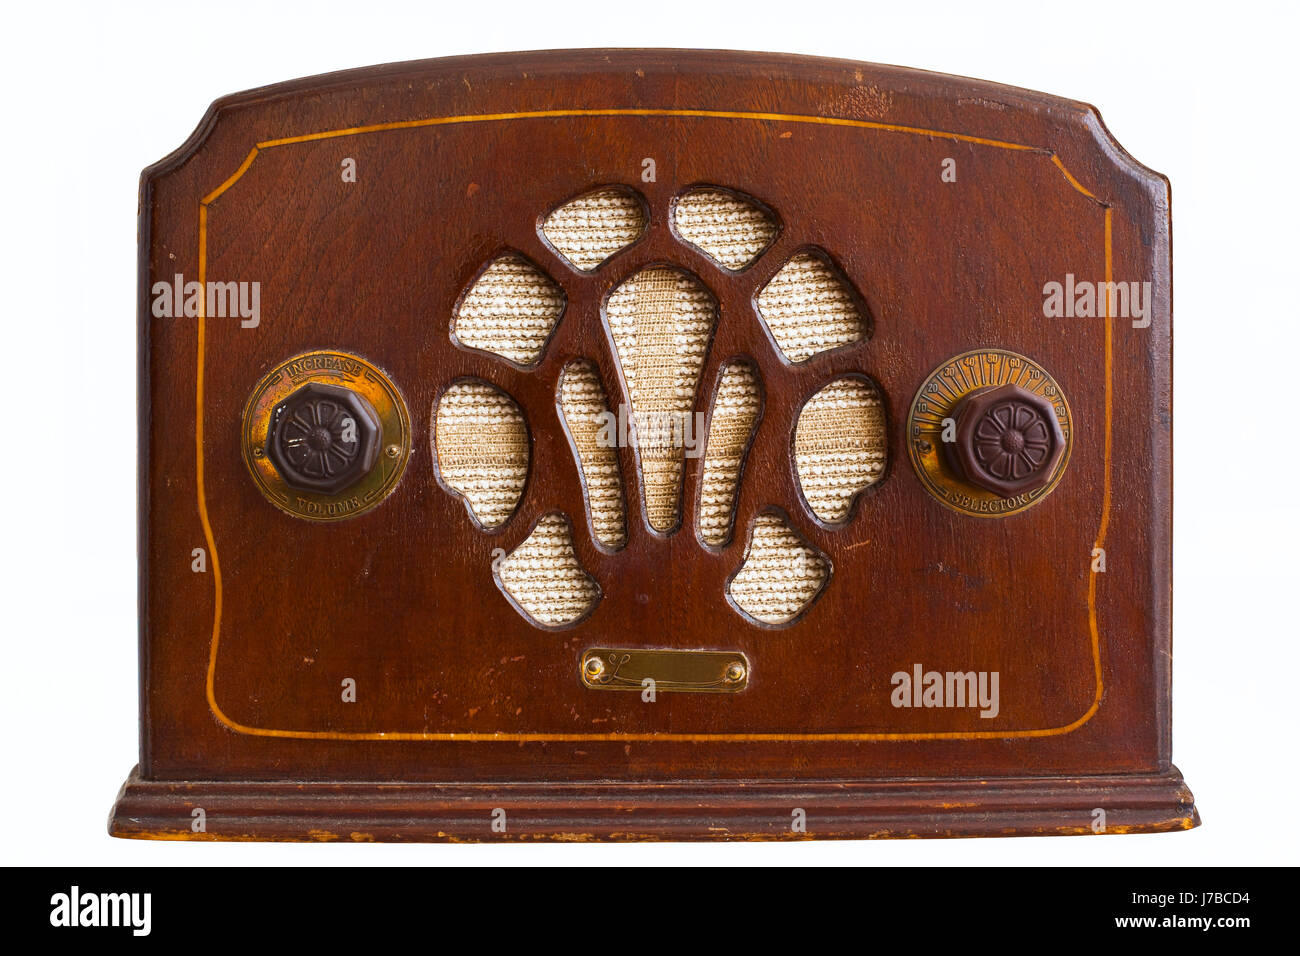 Yoghurt Gelukkig is dat getrouwd radio nostalgia vintage radio speaker wooden valve radio waves old ancient  Stock Photo - Alamy